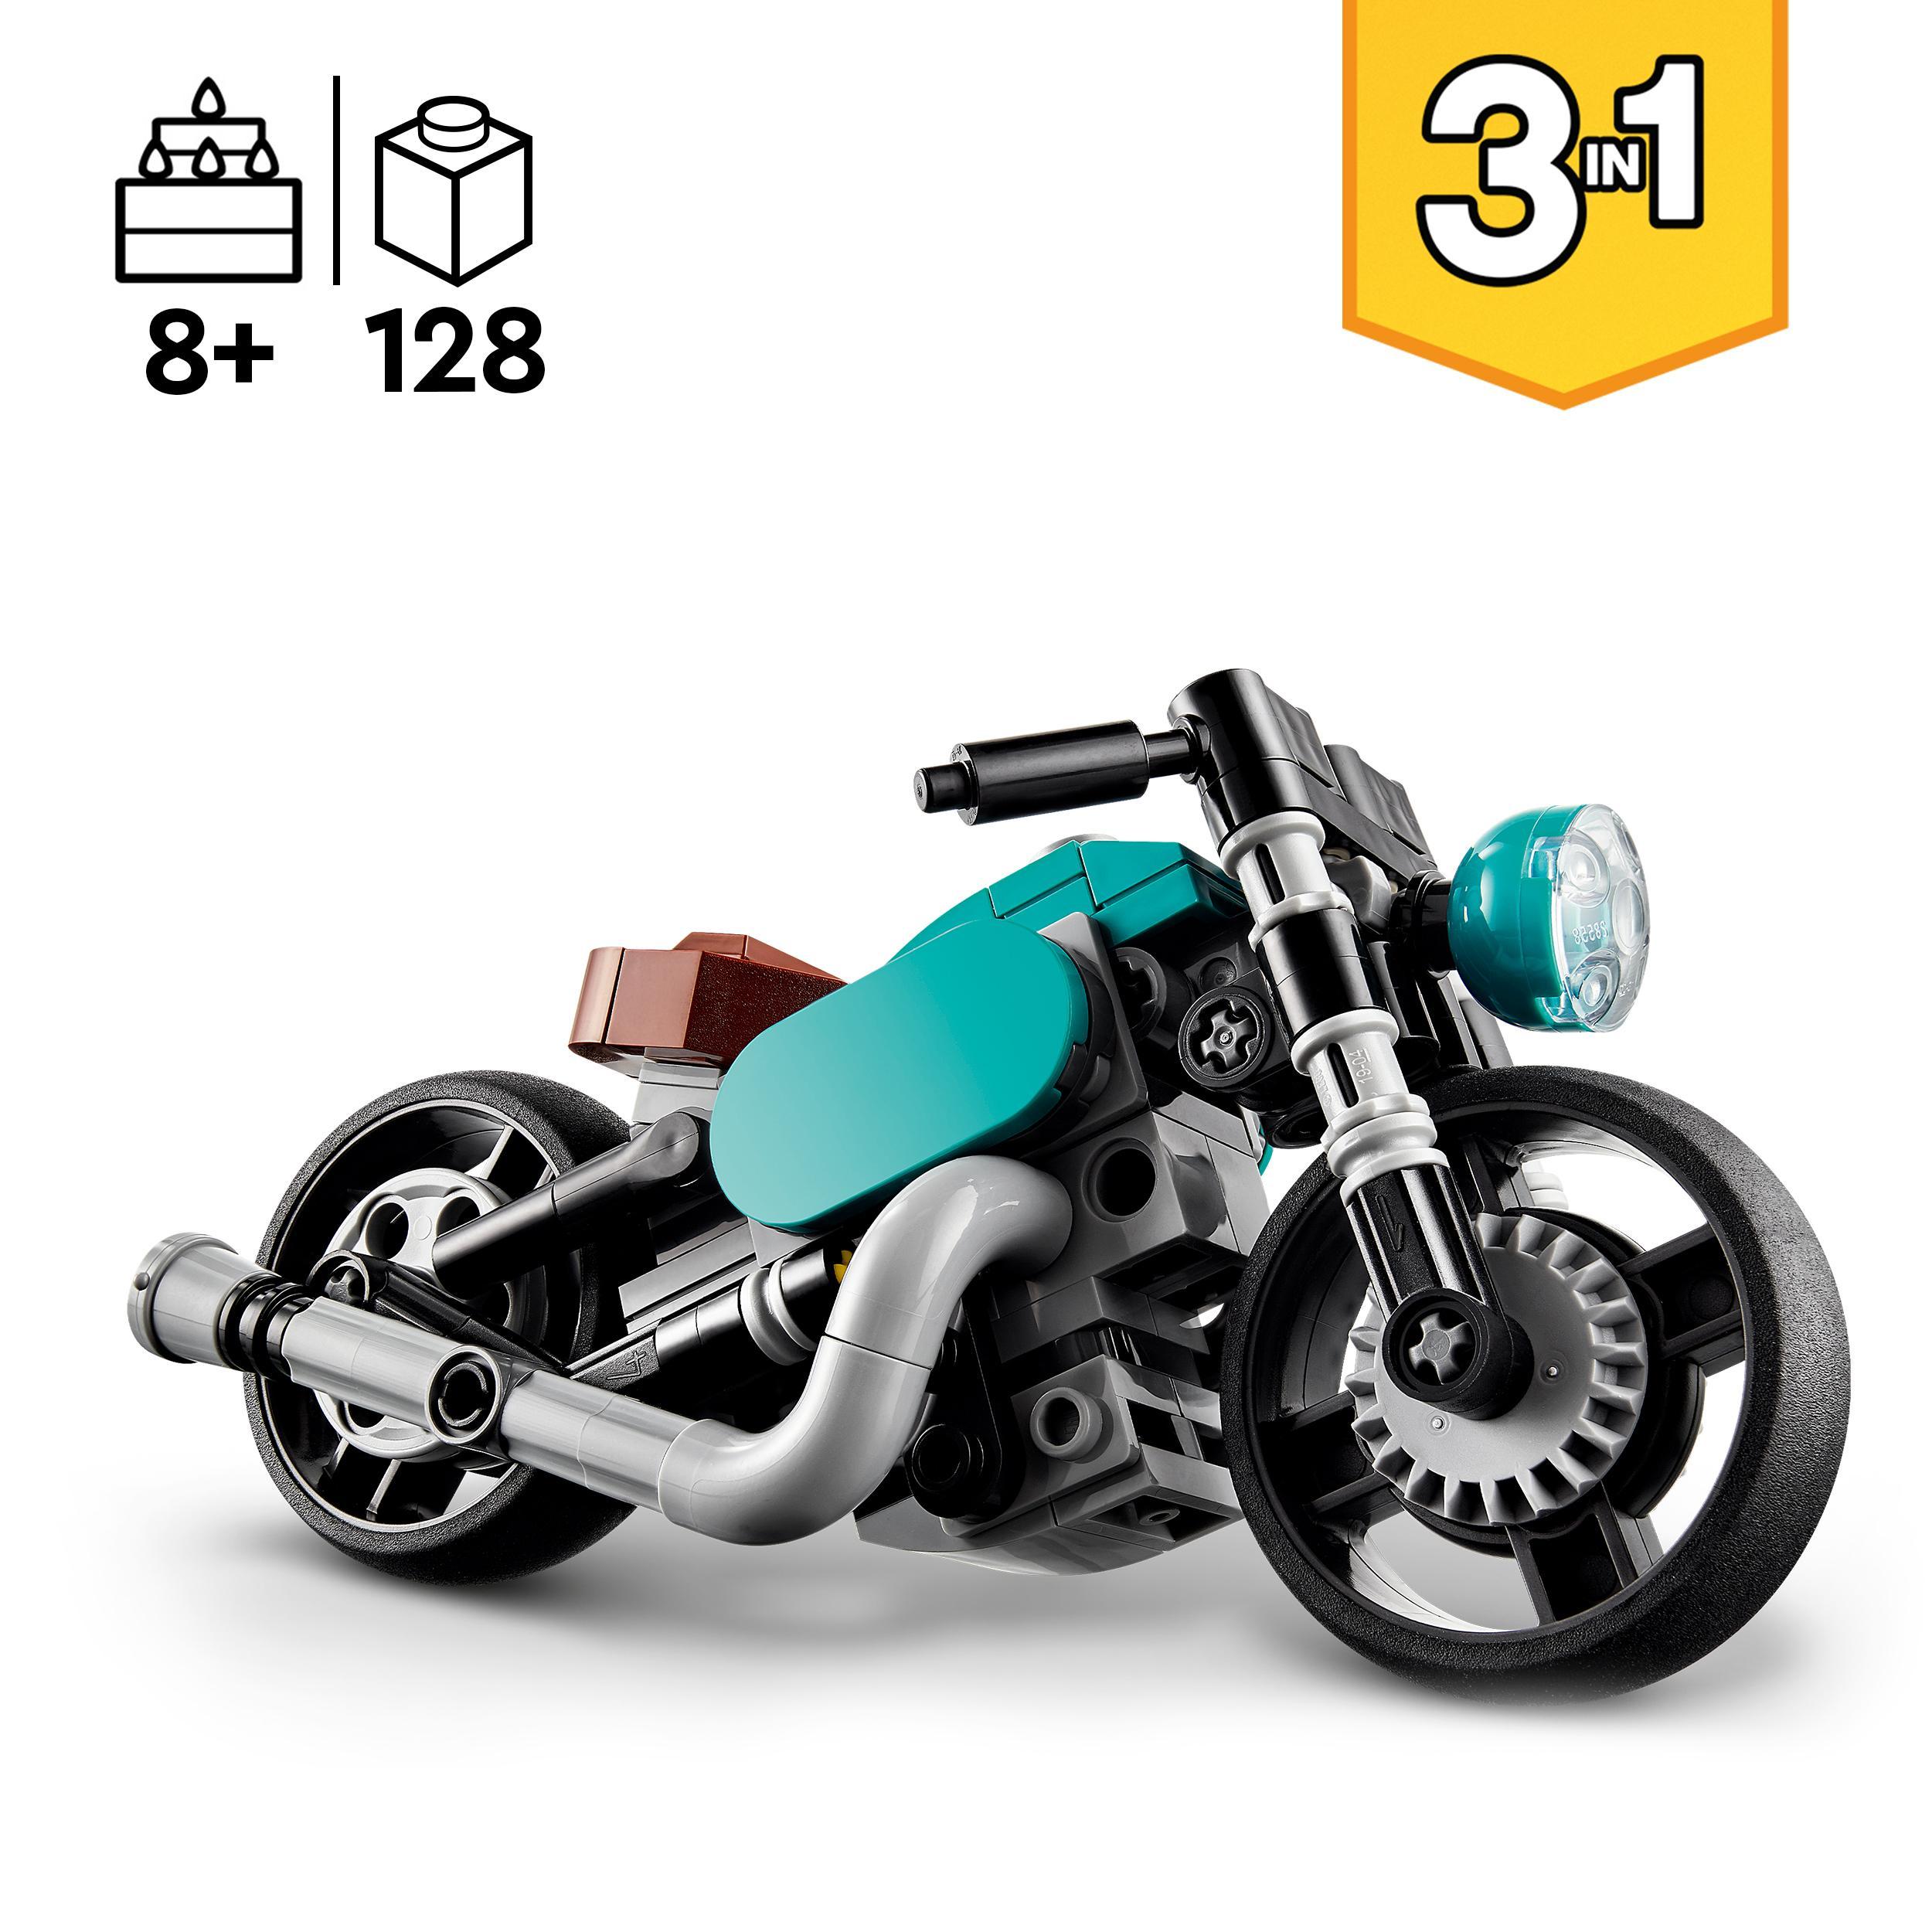 Lego creator 31135 motocicletta vintage, set 3 in 1 con moto giocattolo,  road bike e dragster, giochi creativi per bambini - Toys Center